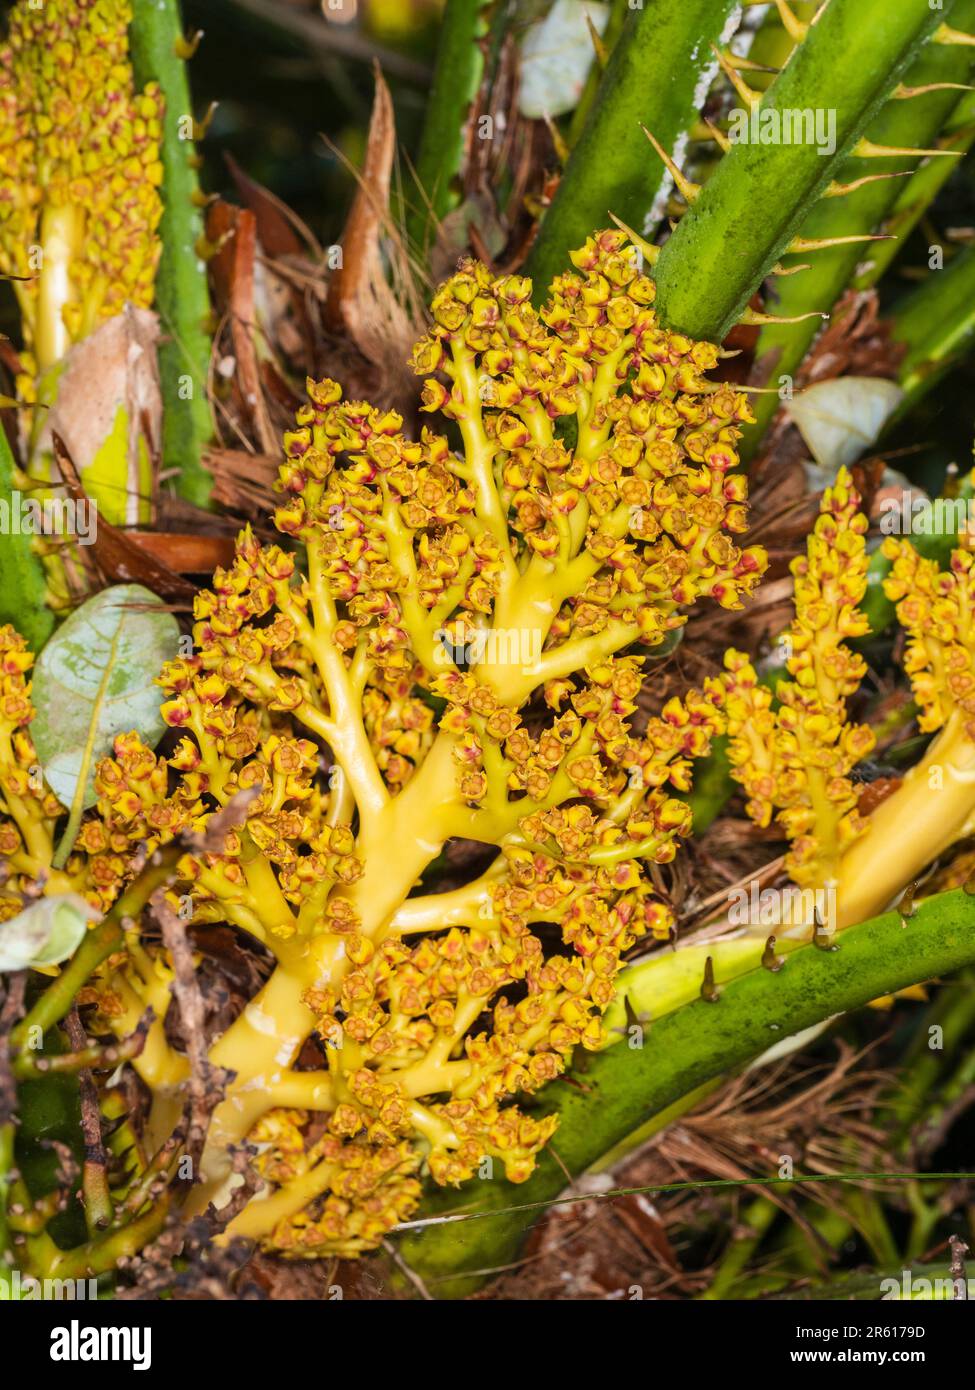 Goldene und rote verzweigte Blütenköpfe der relativ harten europäischen Fanpalme Chaemerops humilis, die Samen setzen Stockfoto